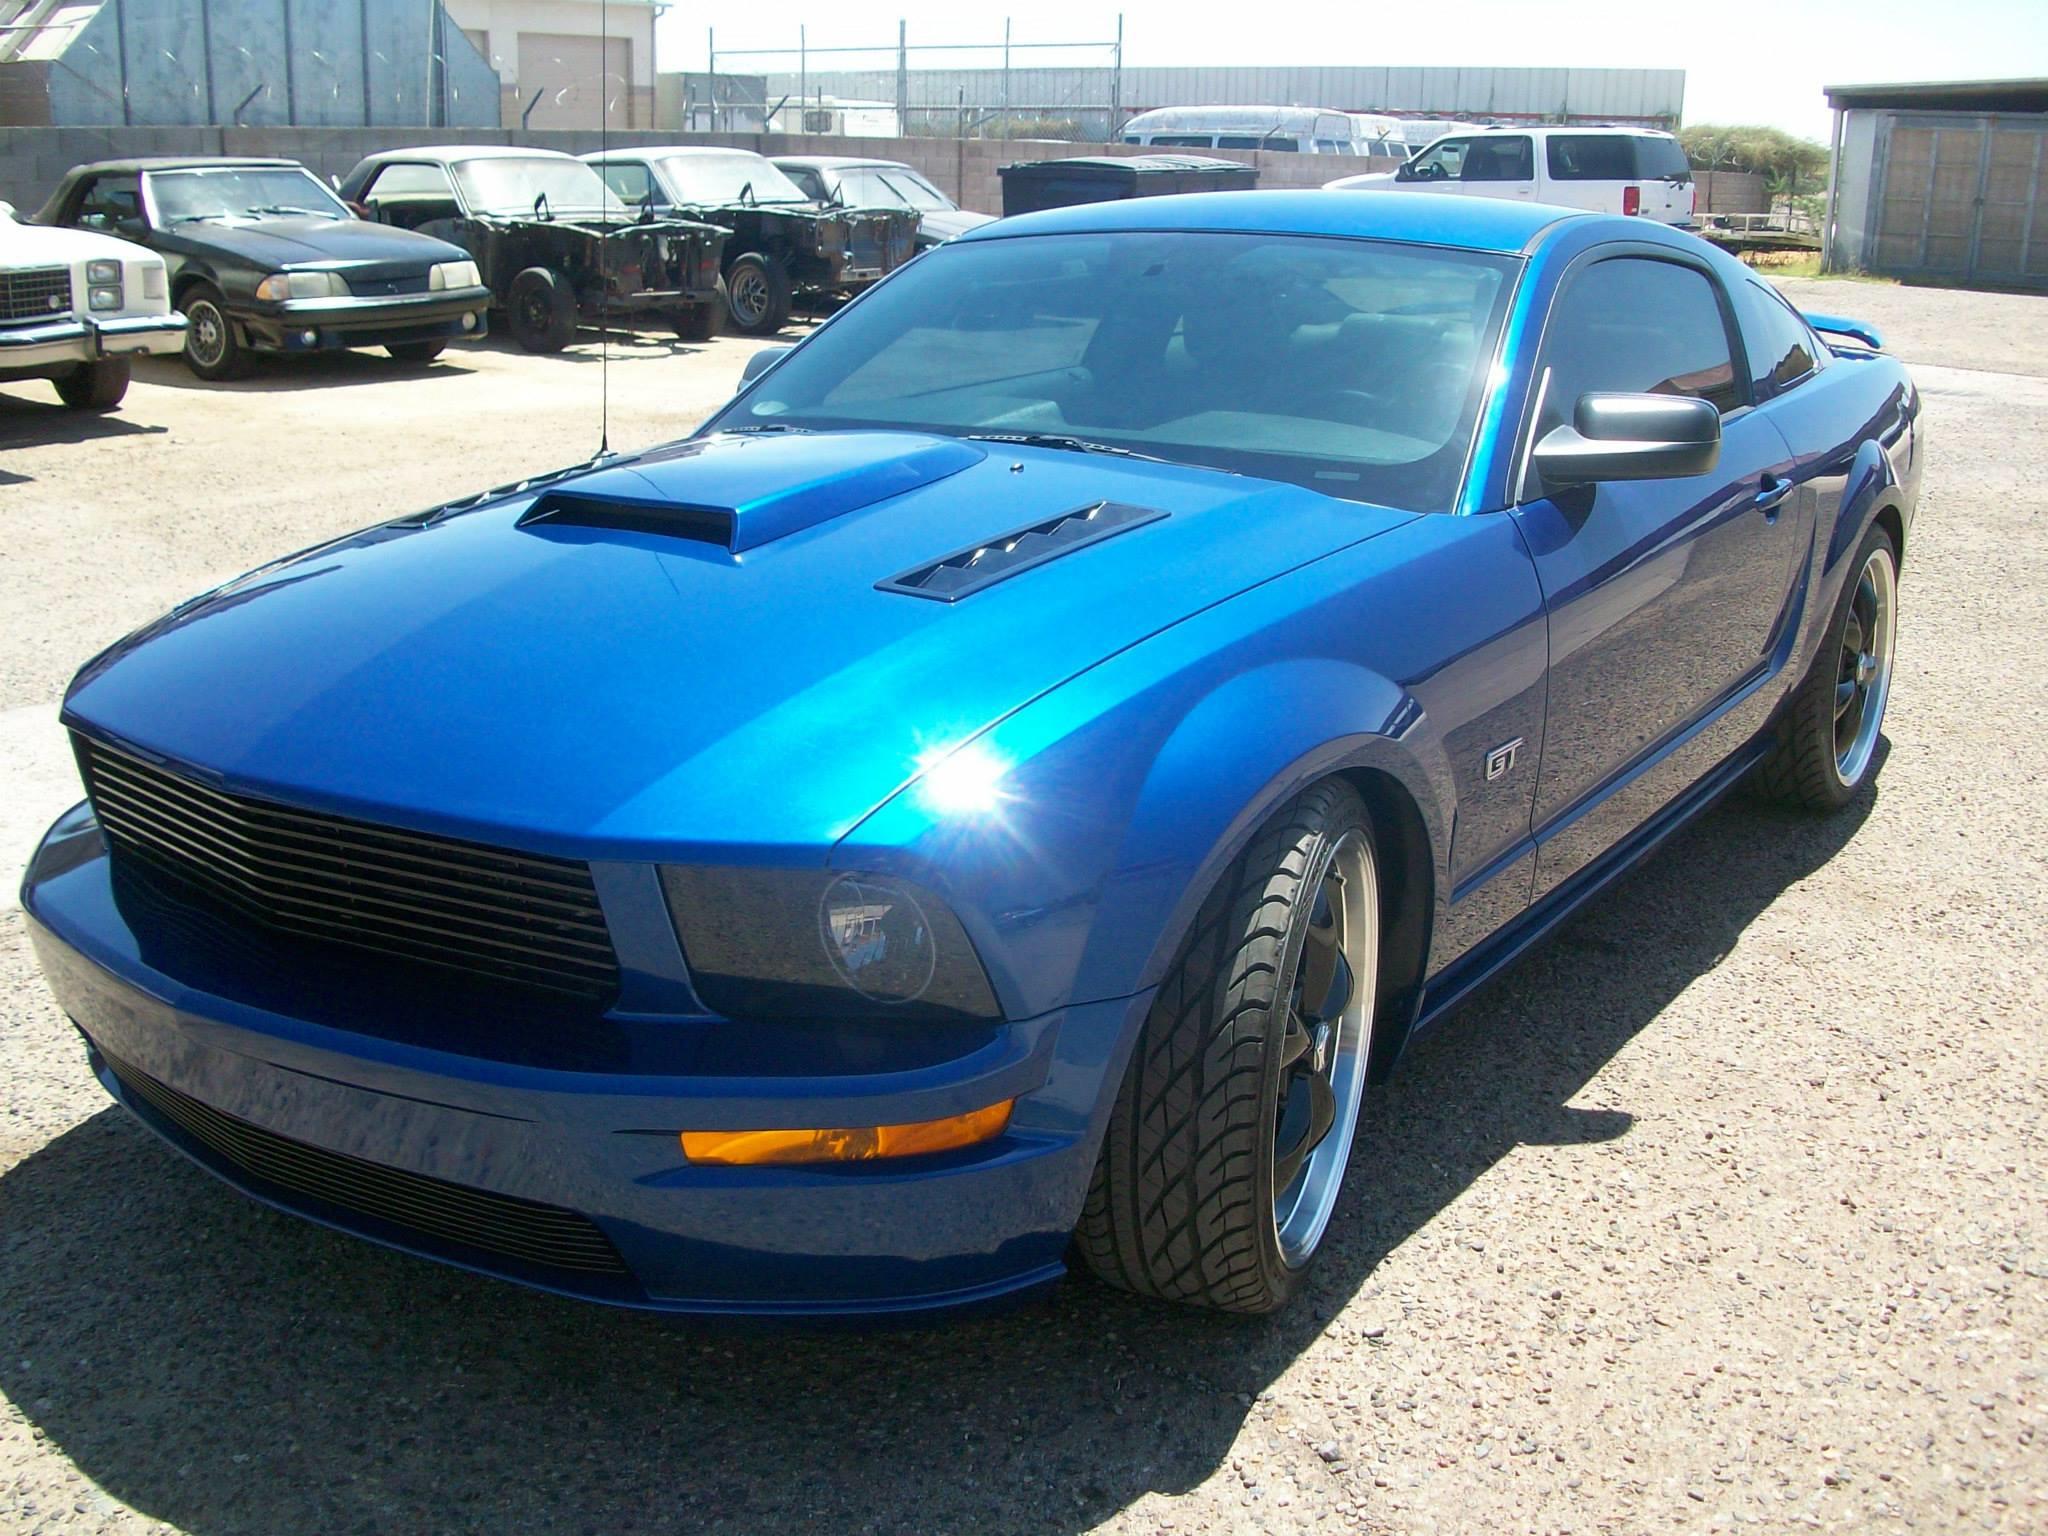 2006 Mustang -  New hood scoop , New Billet grille: